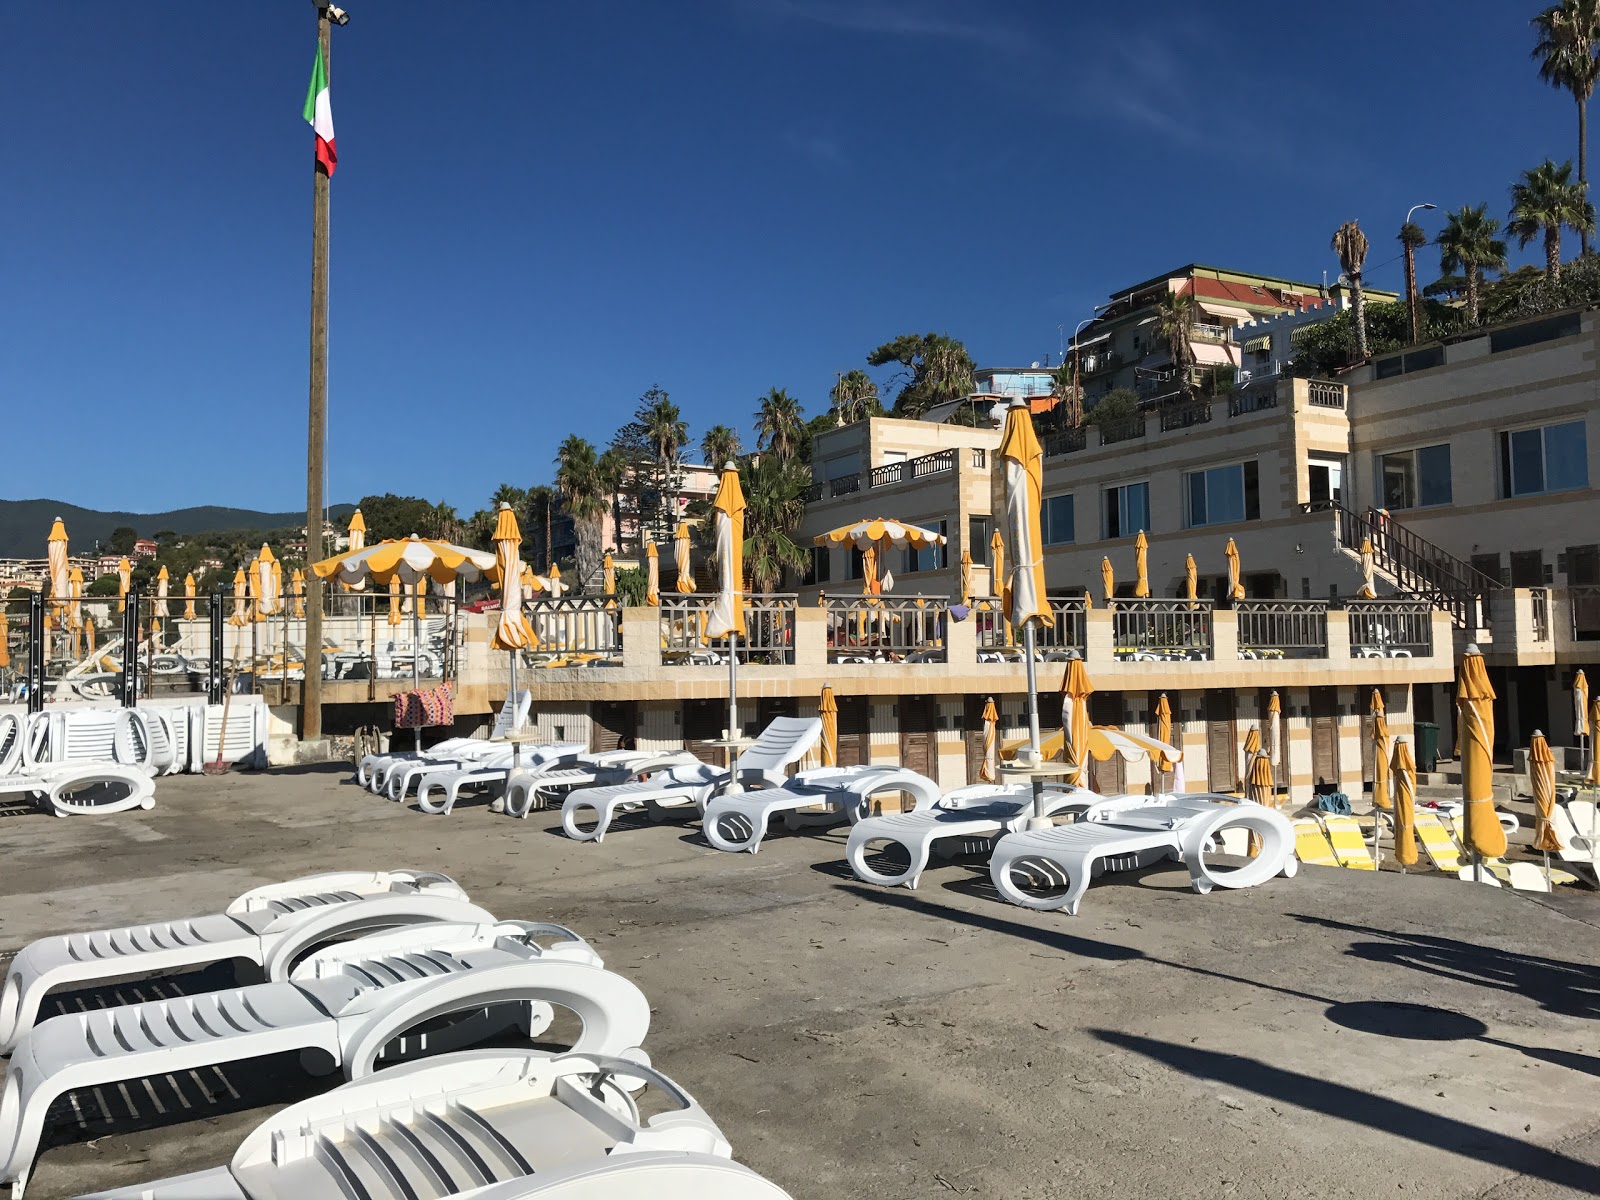 Photo of Bagni La Brezza beach resort area